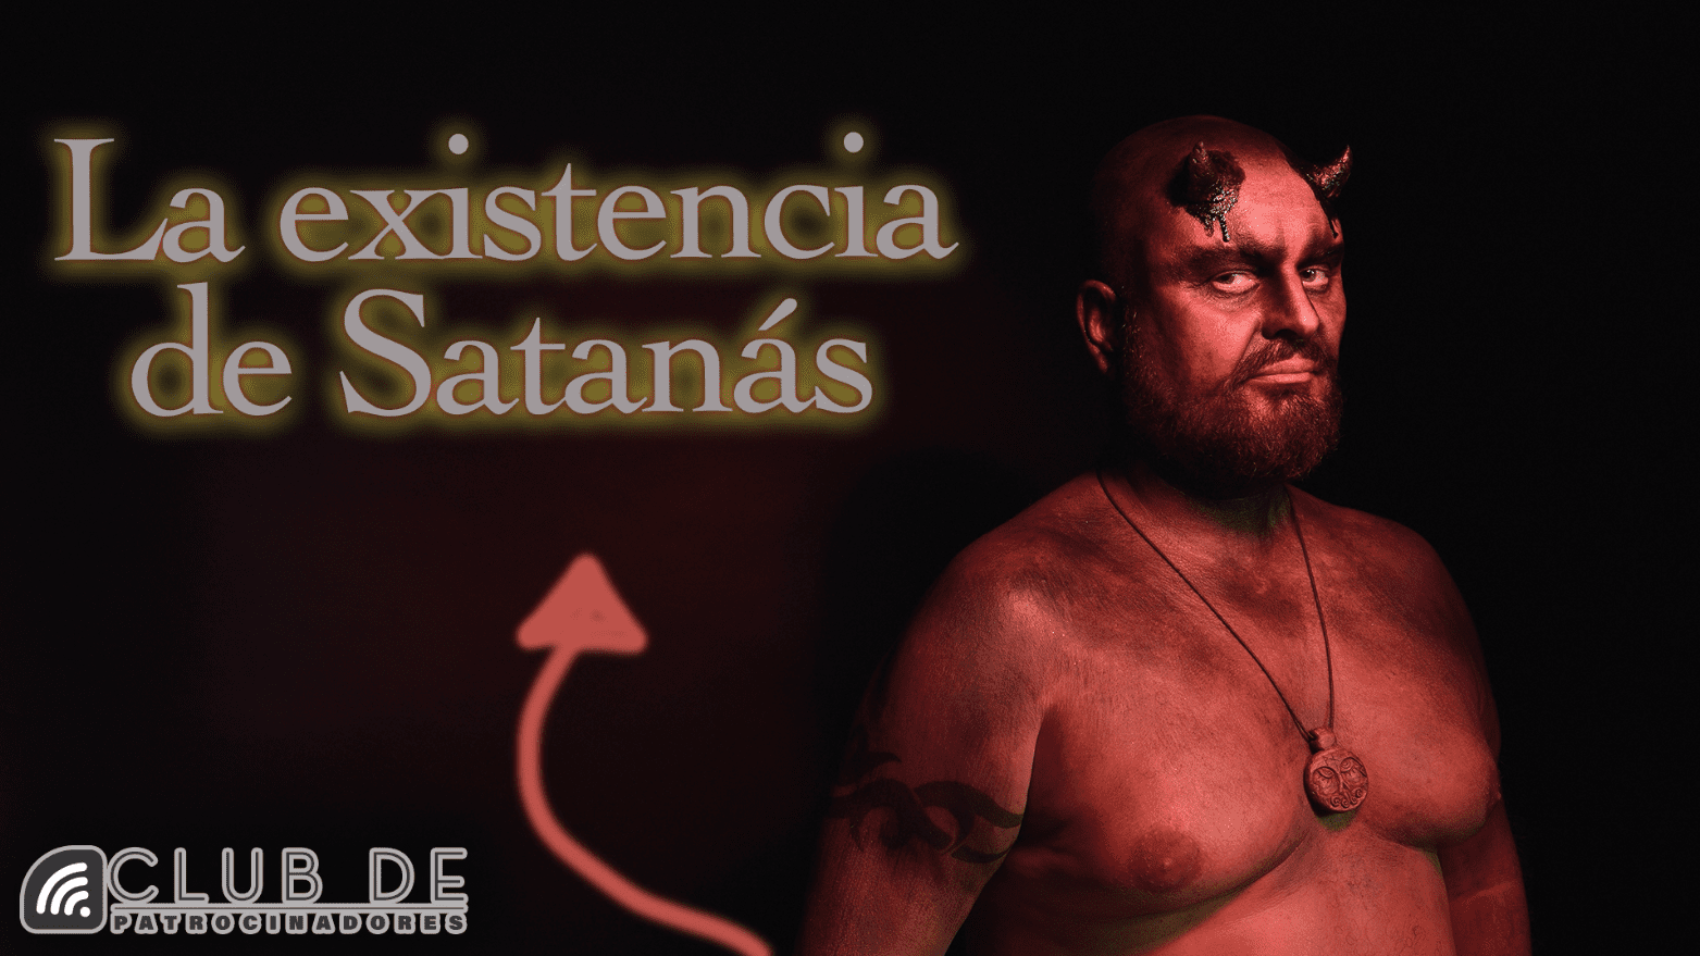 La existencia de Satan